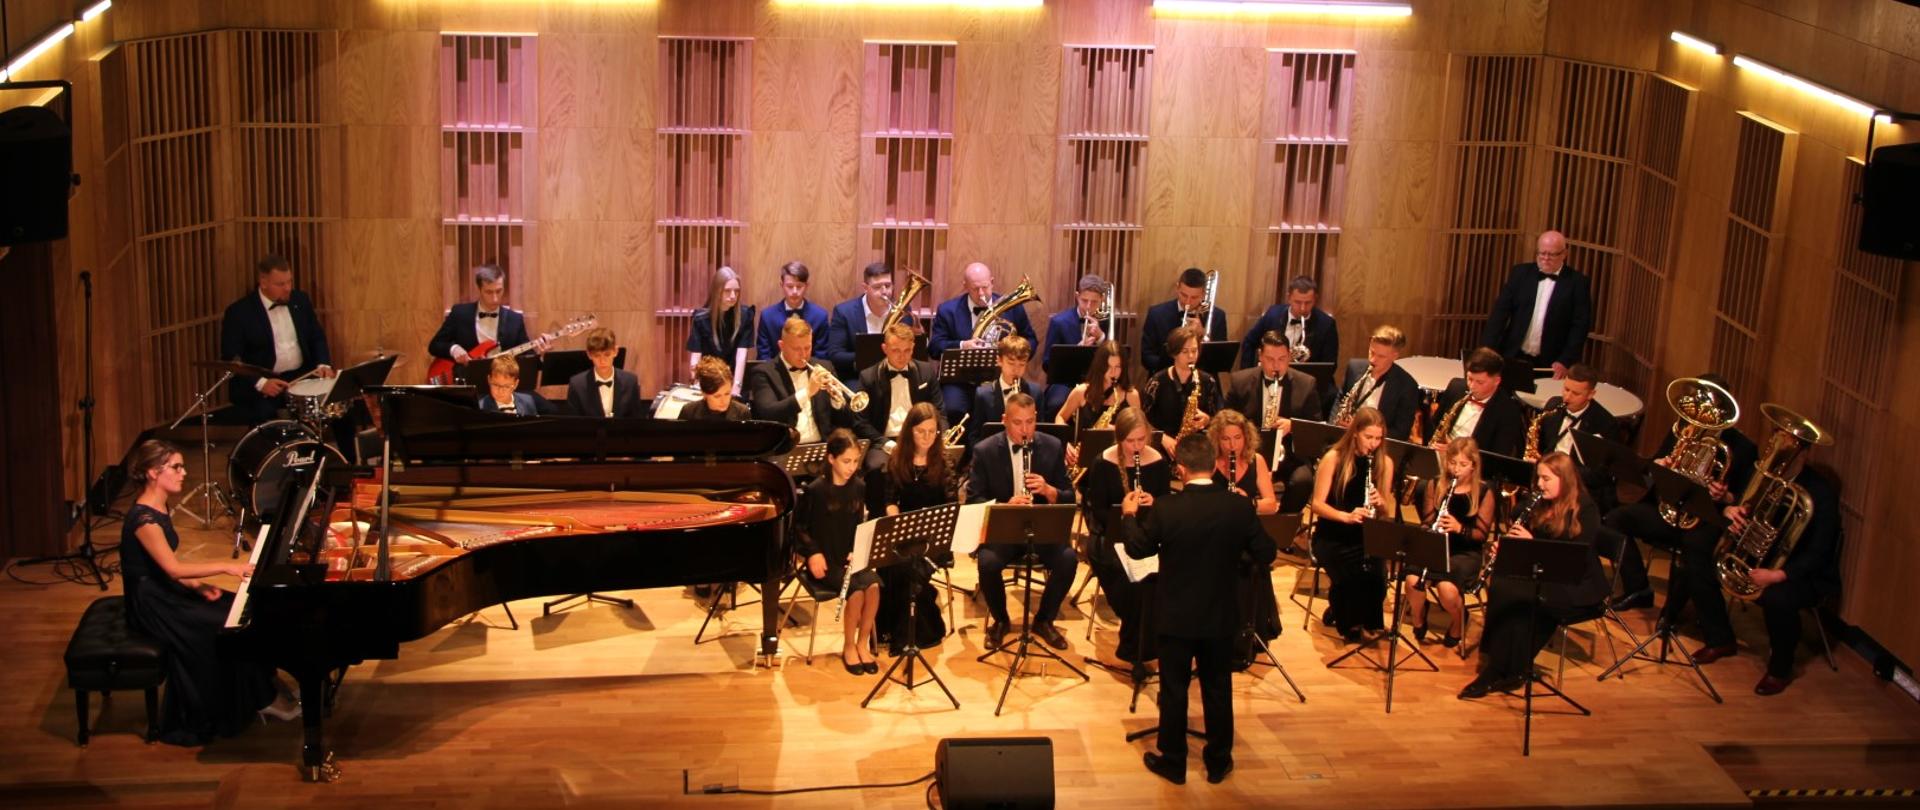 Uroczystość otwarcia Sali koncertowej oraz Jubileusz 30-lecia działalności Państwowej Szkoły Muzycznej w Zambrowie 